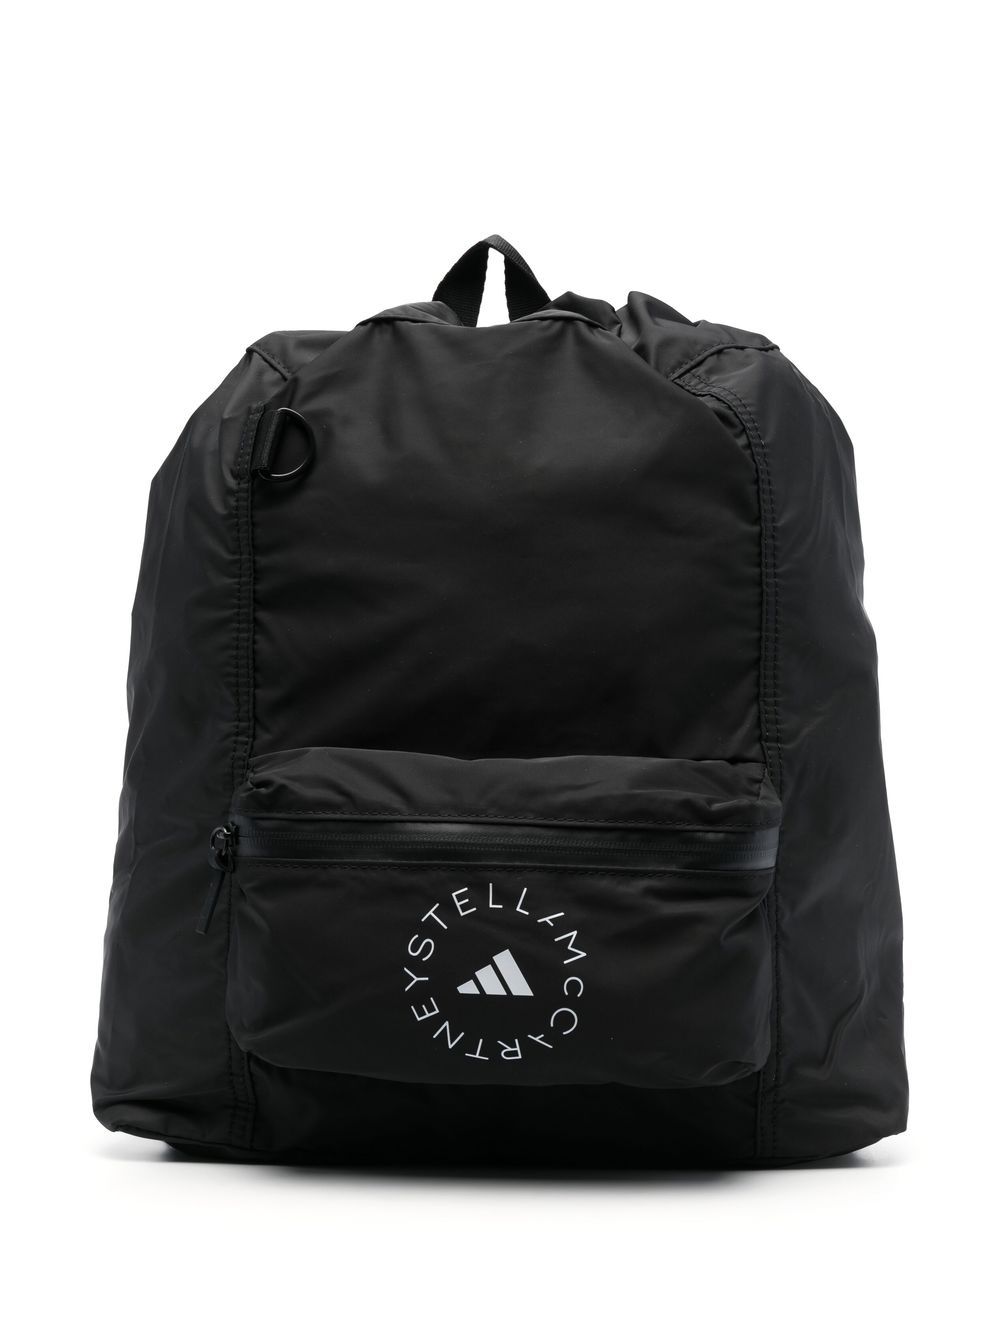 Logo print backpack<BR/><BR/><BR/>